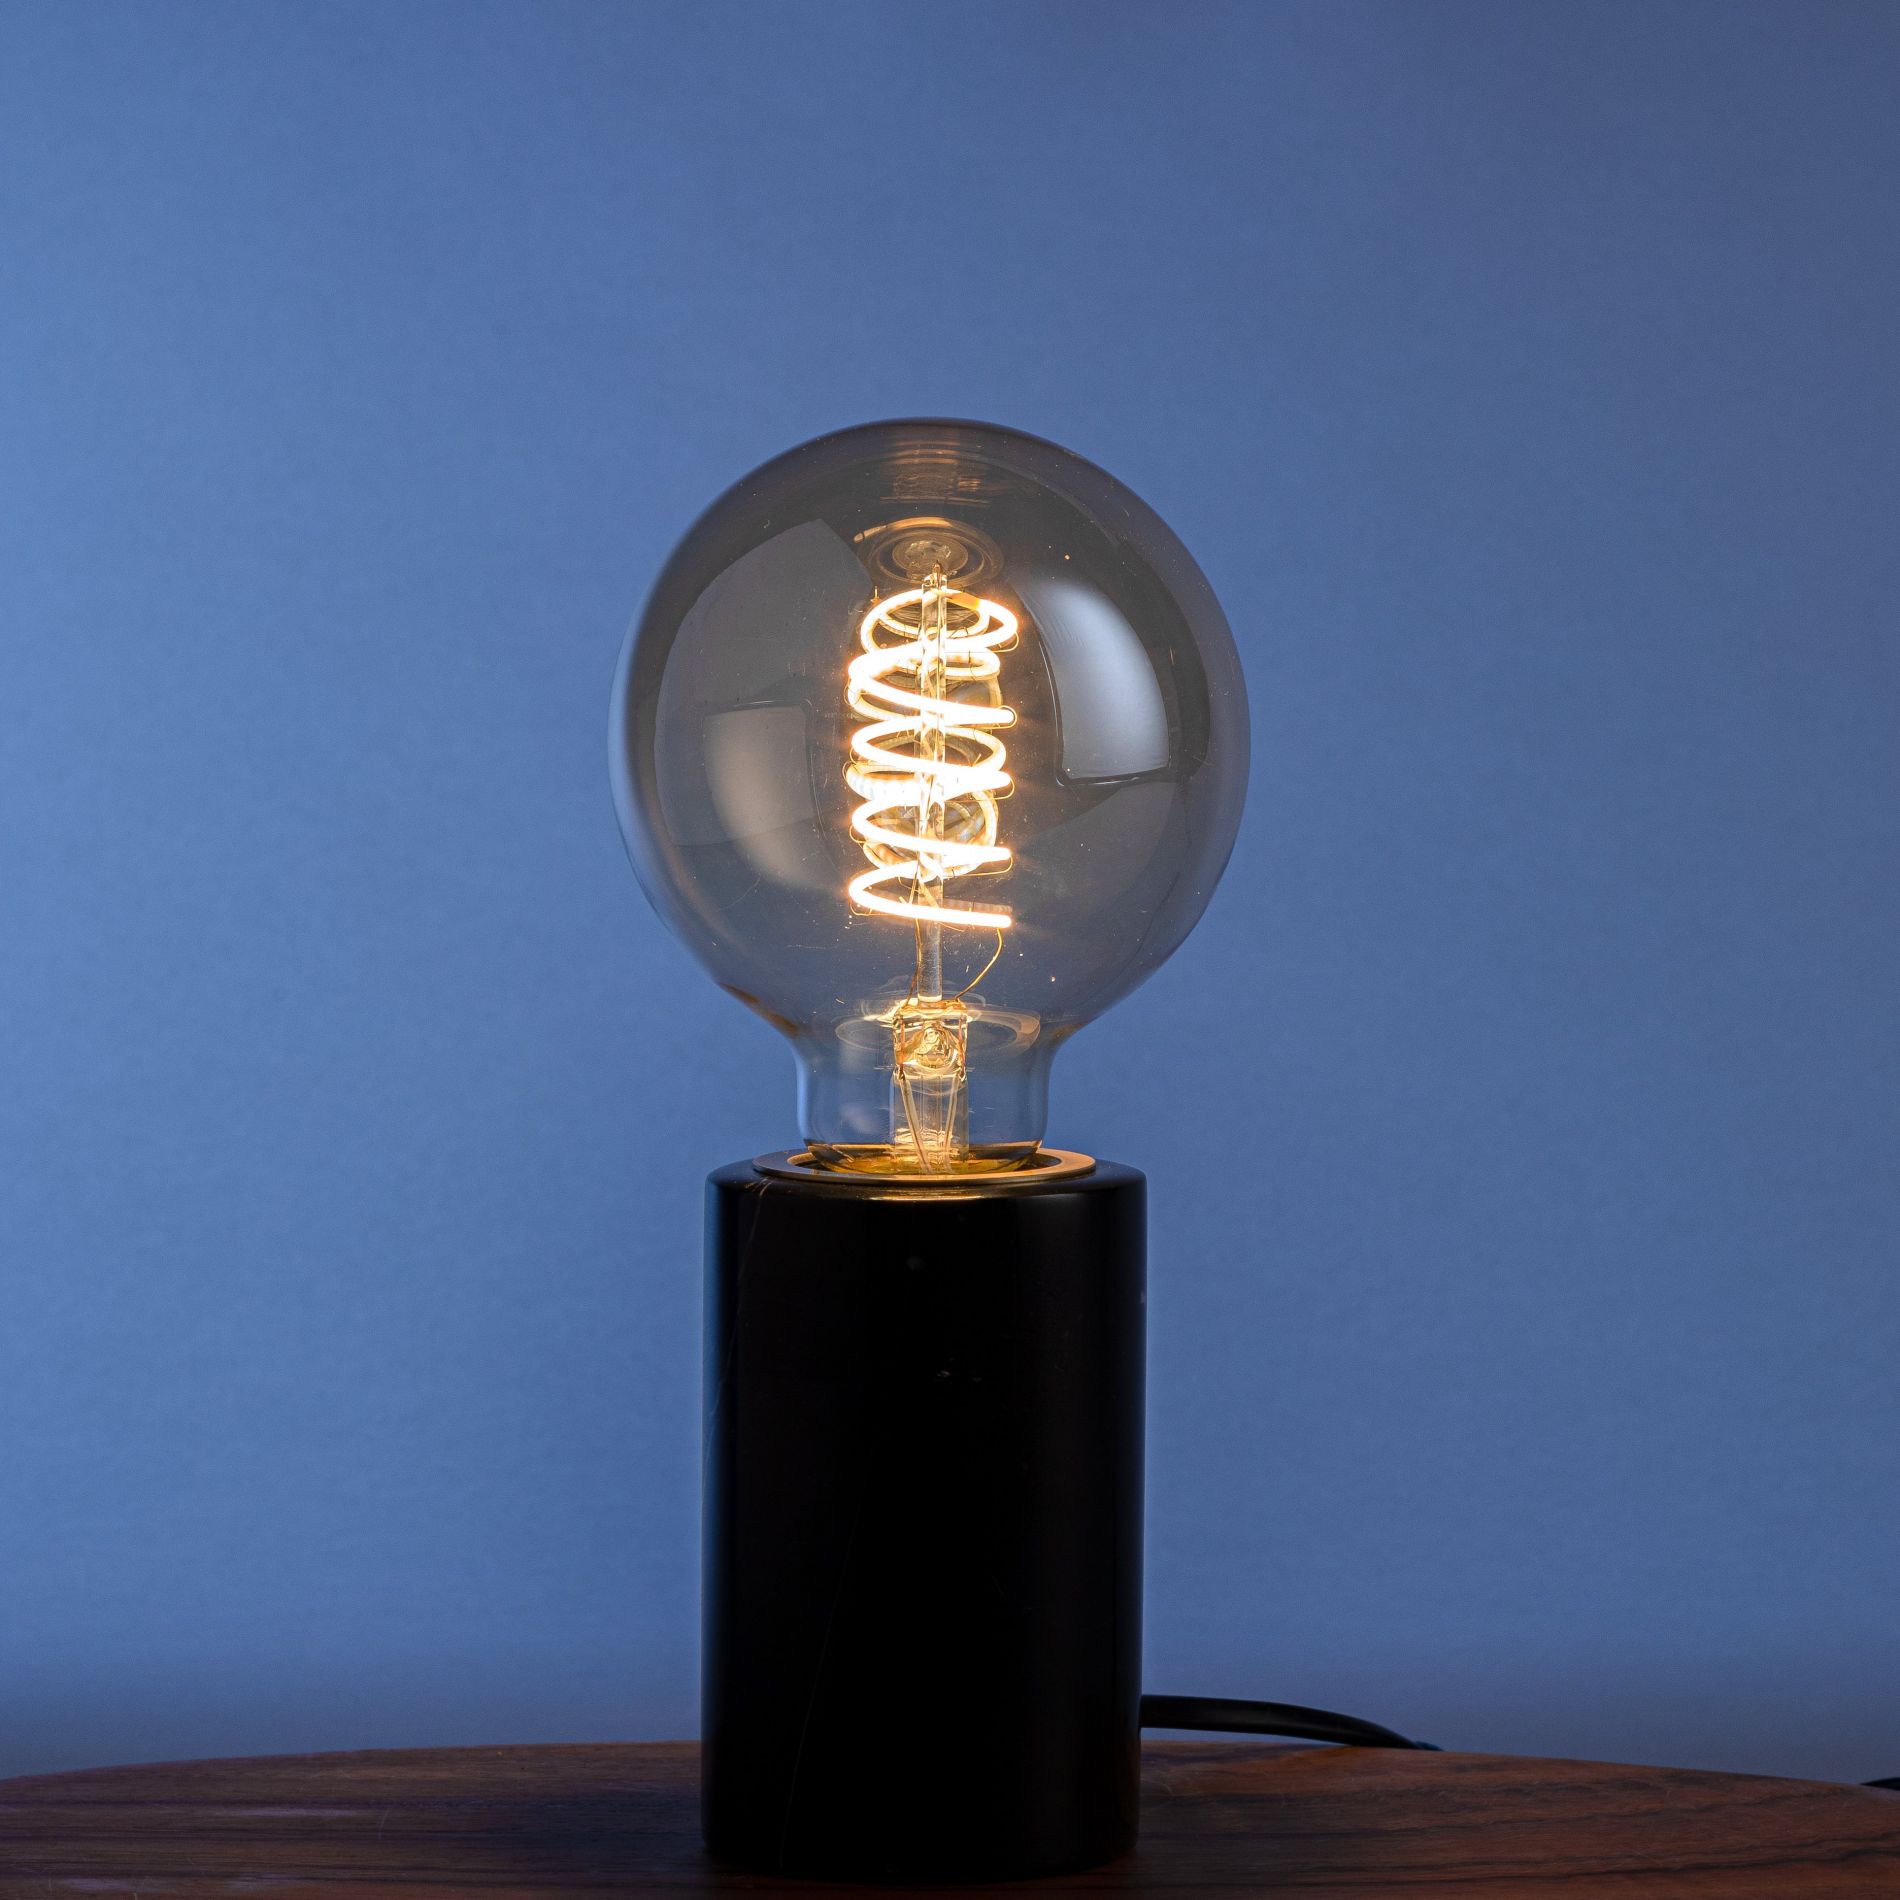 Ampoule déco filament LED dimmable E27 AMBRE FLEX 200 lumens en verre ambré Ø12.5cm